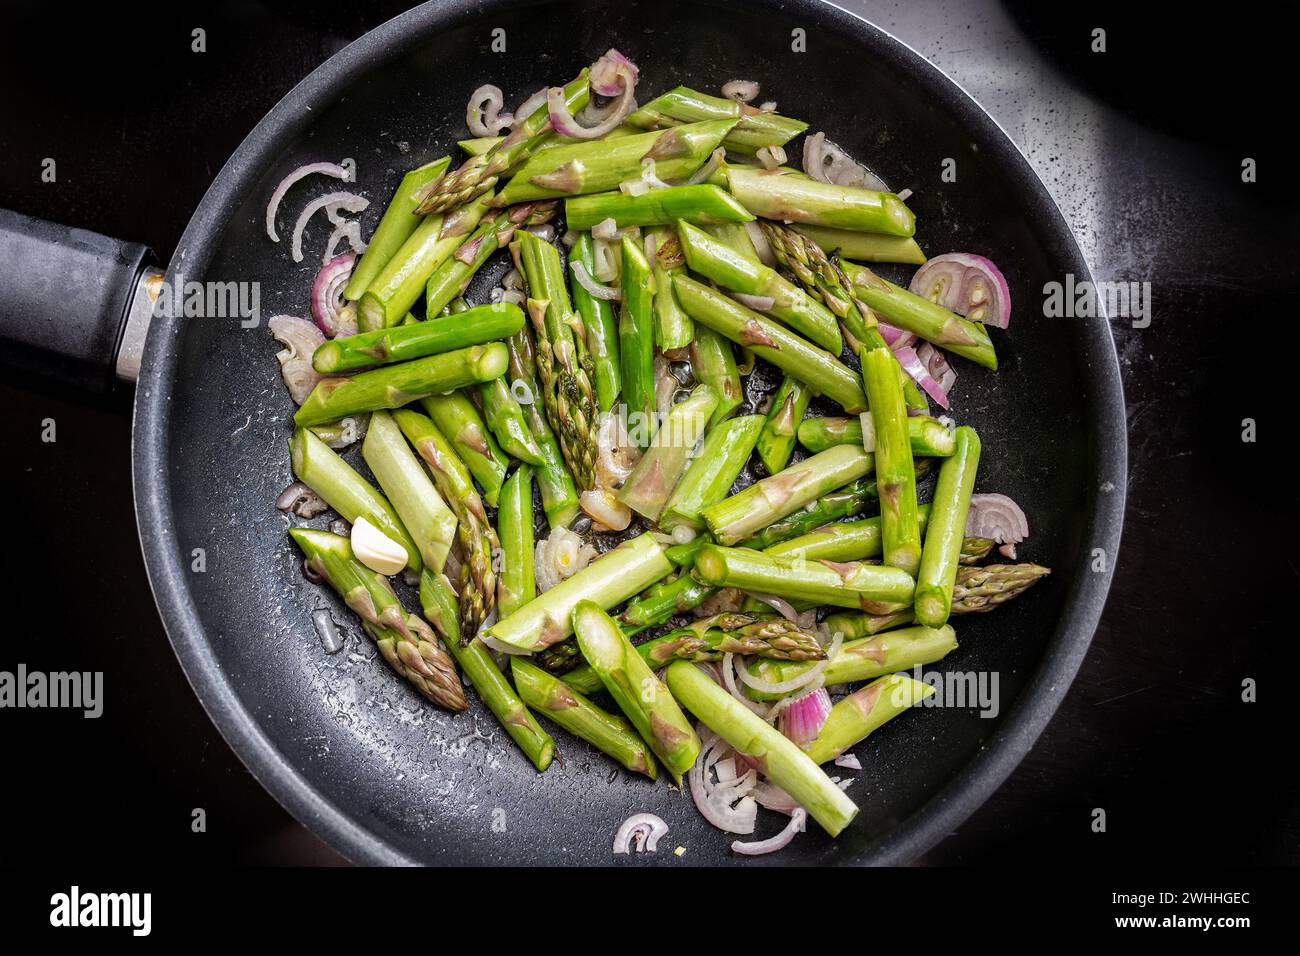 Asperges vertes et oignons rouges dans une poêle sur la cuisinière noire, cuisiner un repas végétarien sain avec des légumes de saison Banque D'Images